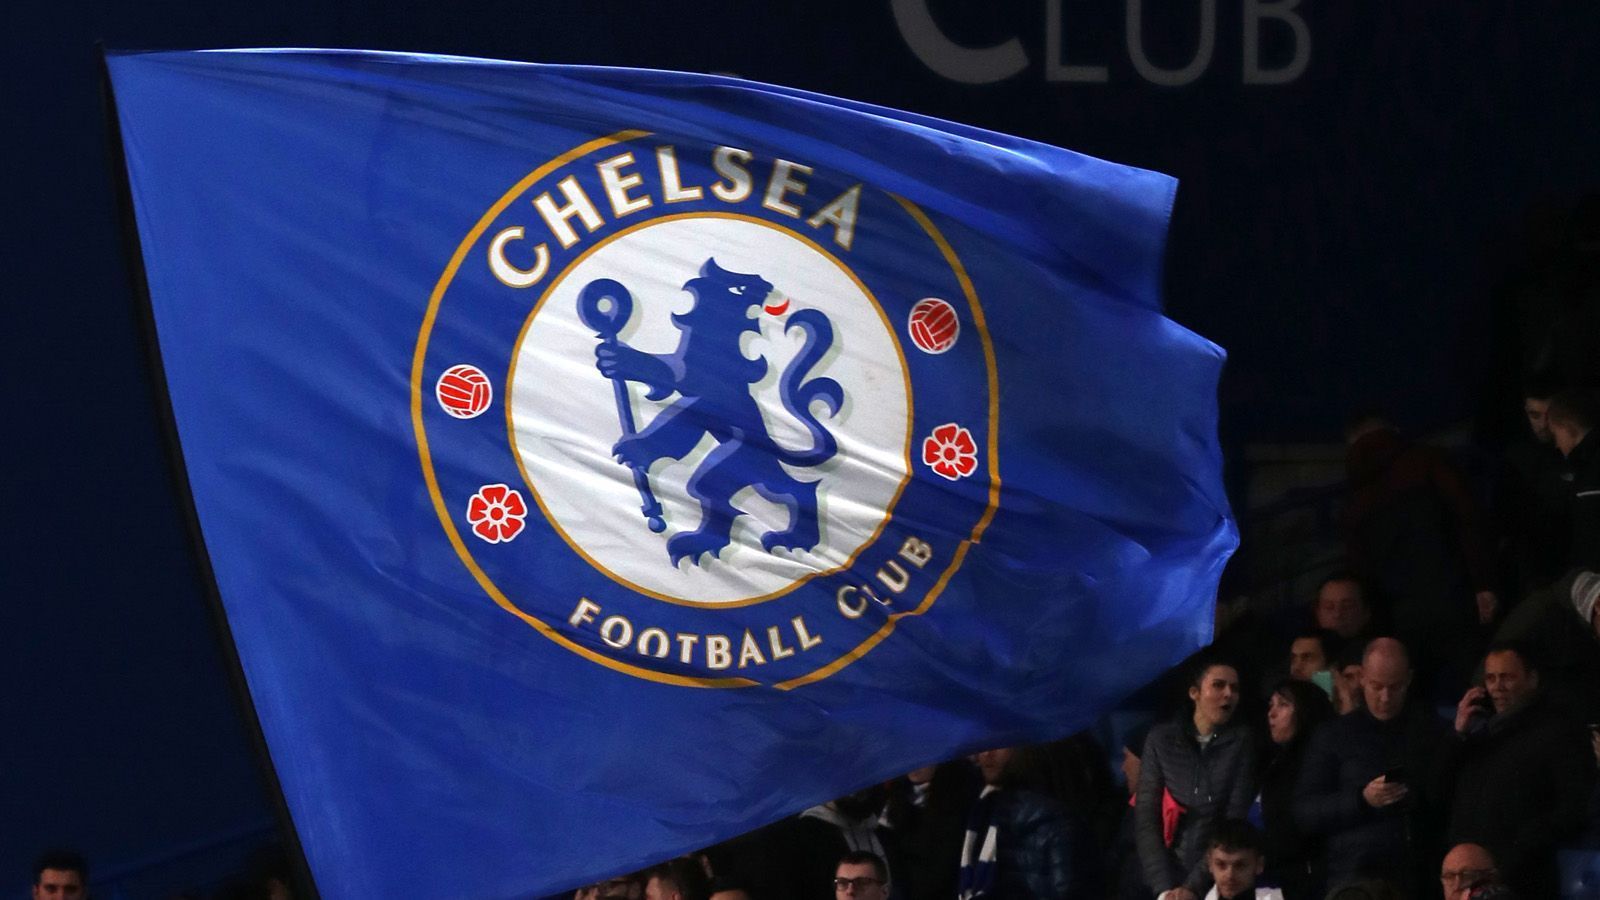 
                <strong>FC Chelsea London</strong><br>
                Umsatz: 506,24 Mio. EuroLohnkosten: 277,98 Mio. Euro (55% des Umsatzes)Gewinn vor Steuern: 33,9 Mio. Euro
              